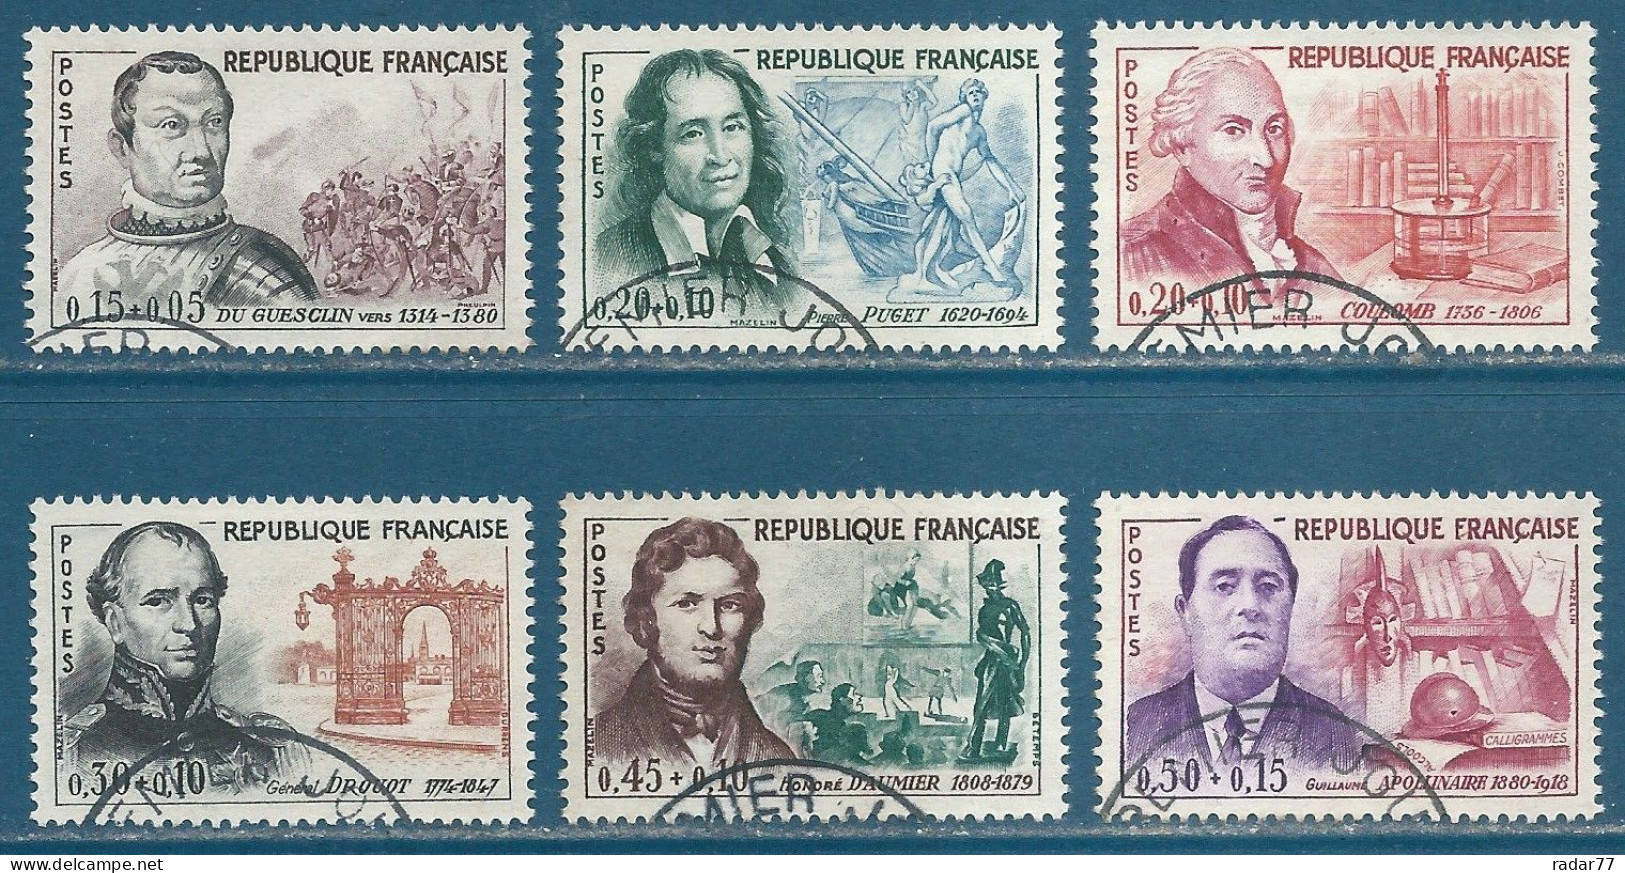 N°1295 à 1300 Célébrités Françaises Oblitéré - Used Stamps